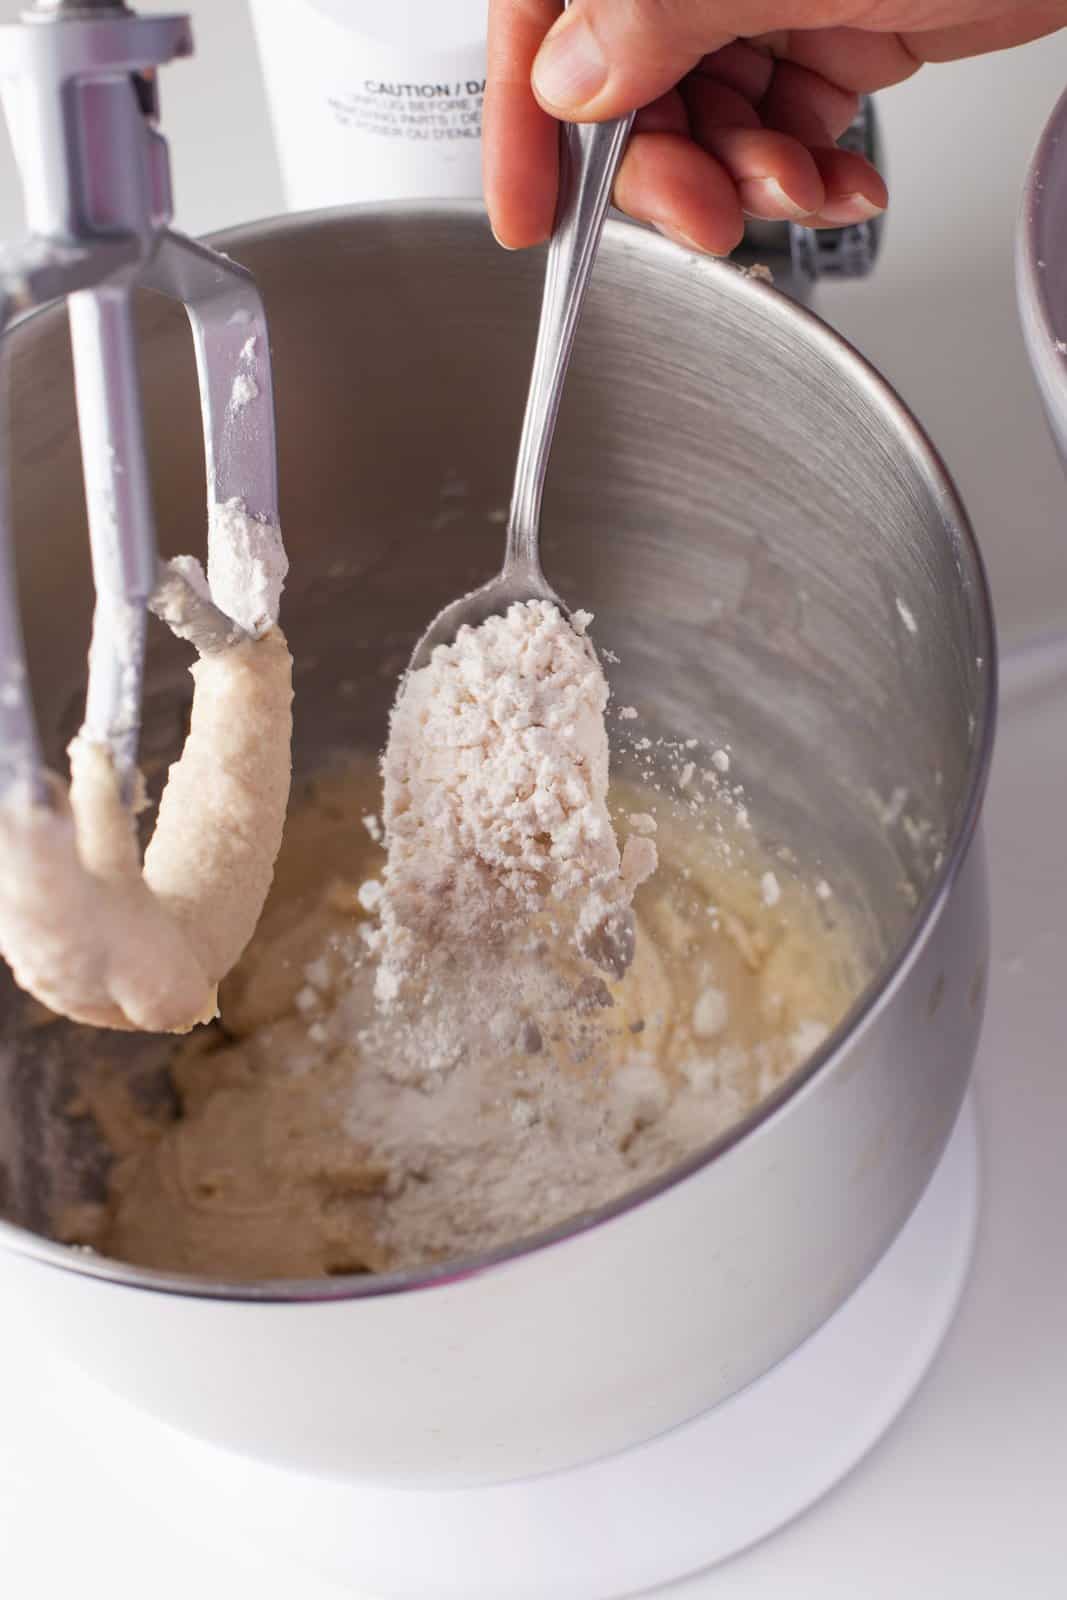 Gli ingredienti secchi setacciati vengono aggiunti al robot da cucina.